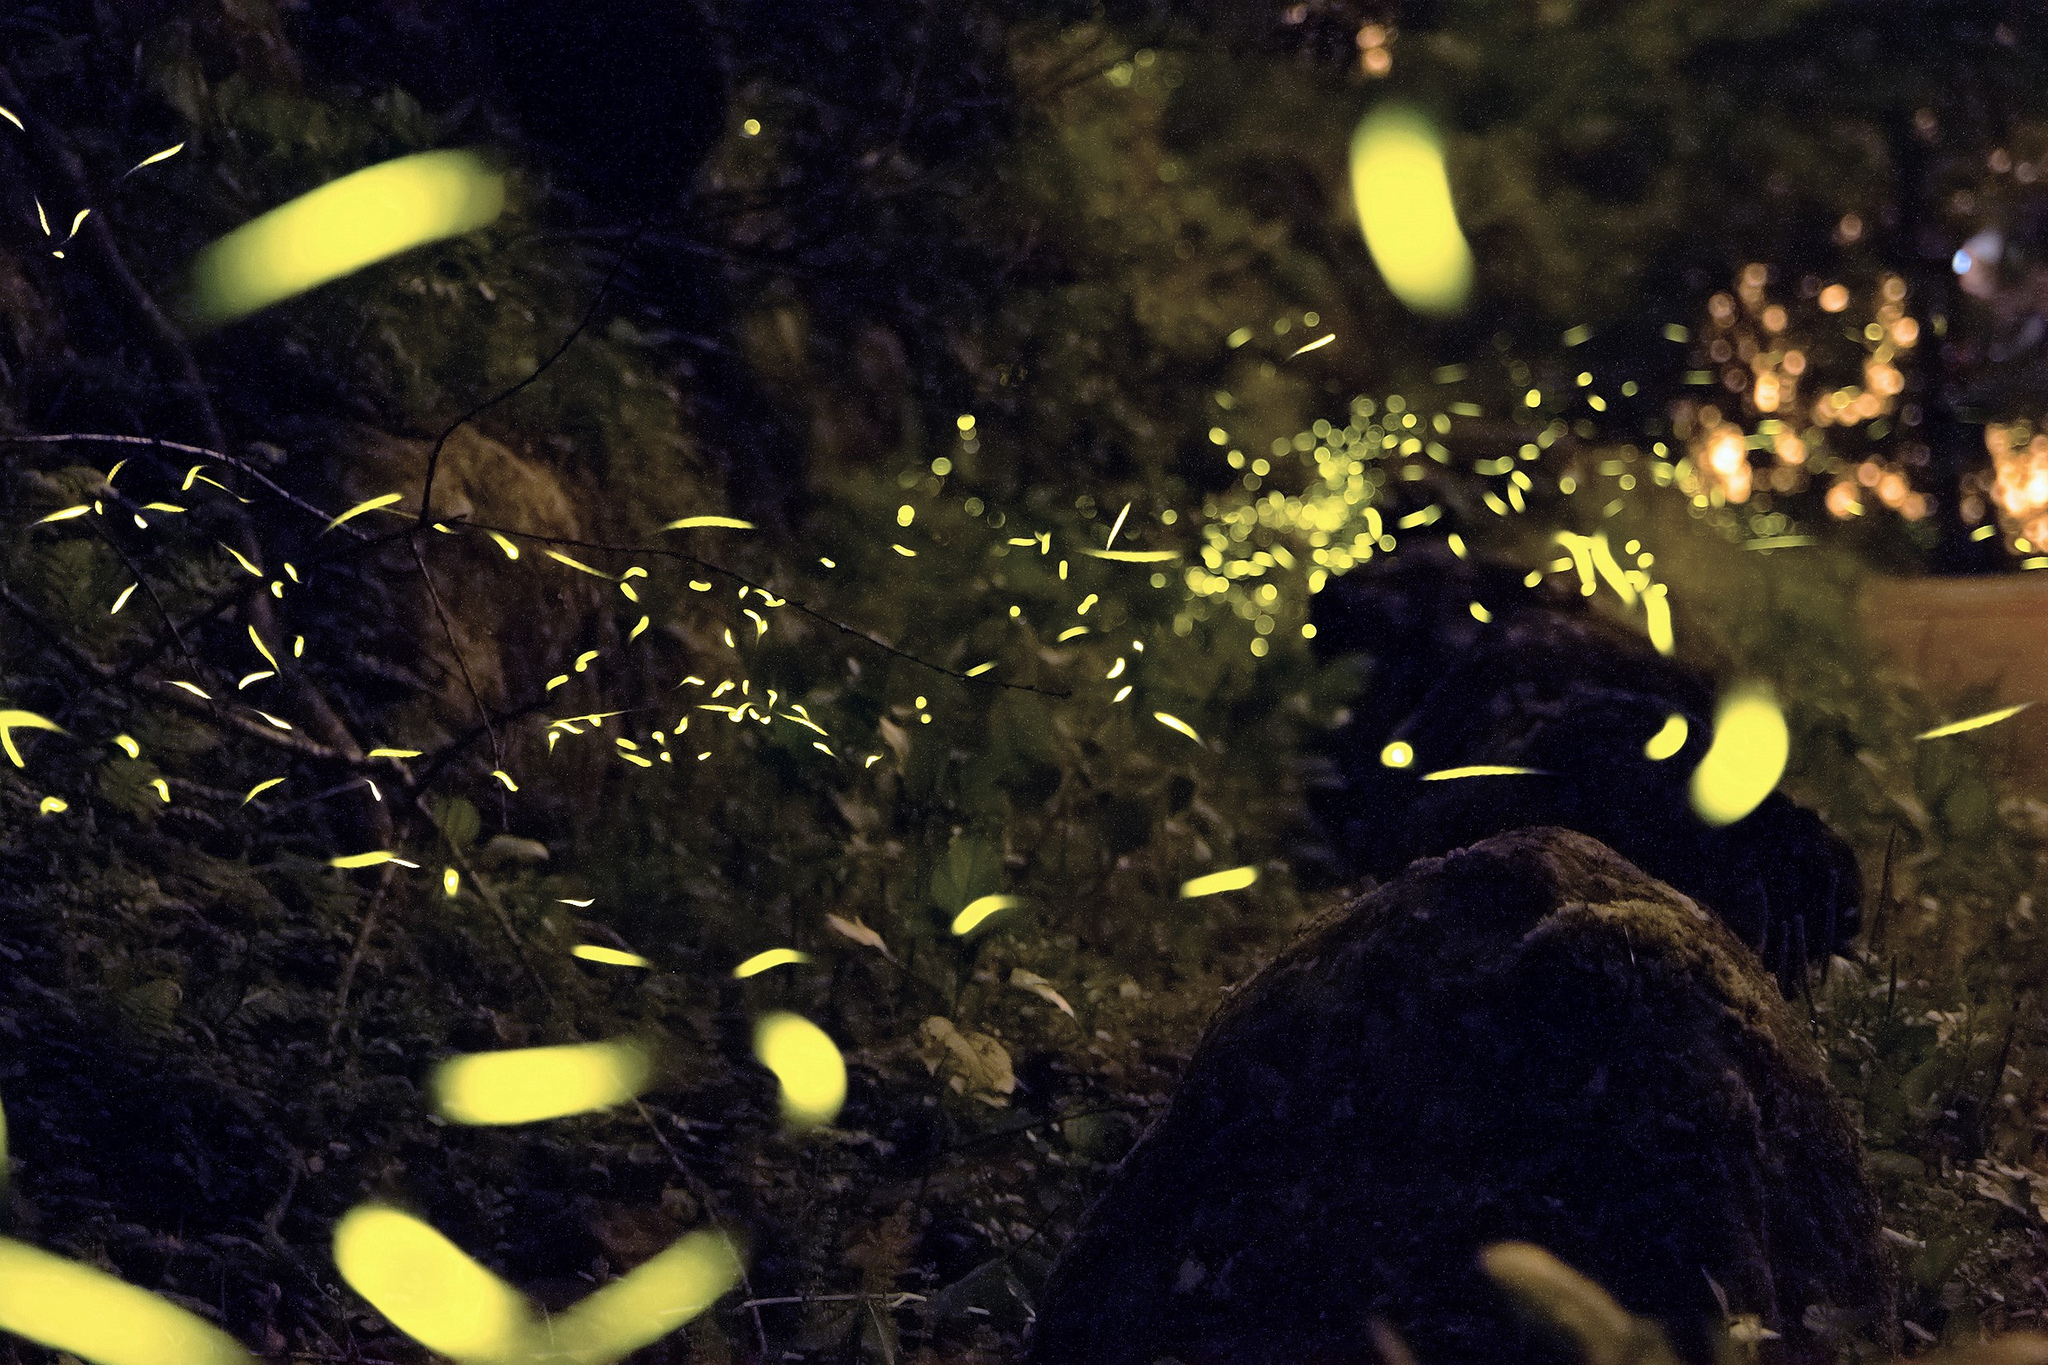 Fireflies in Taiwan